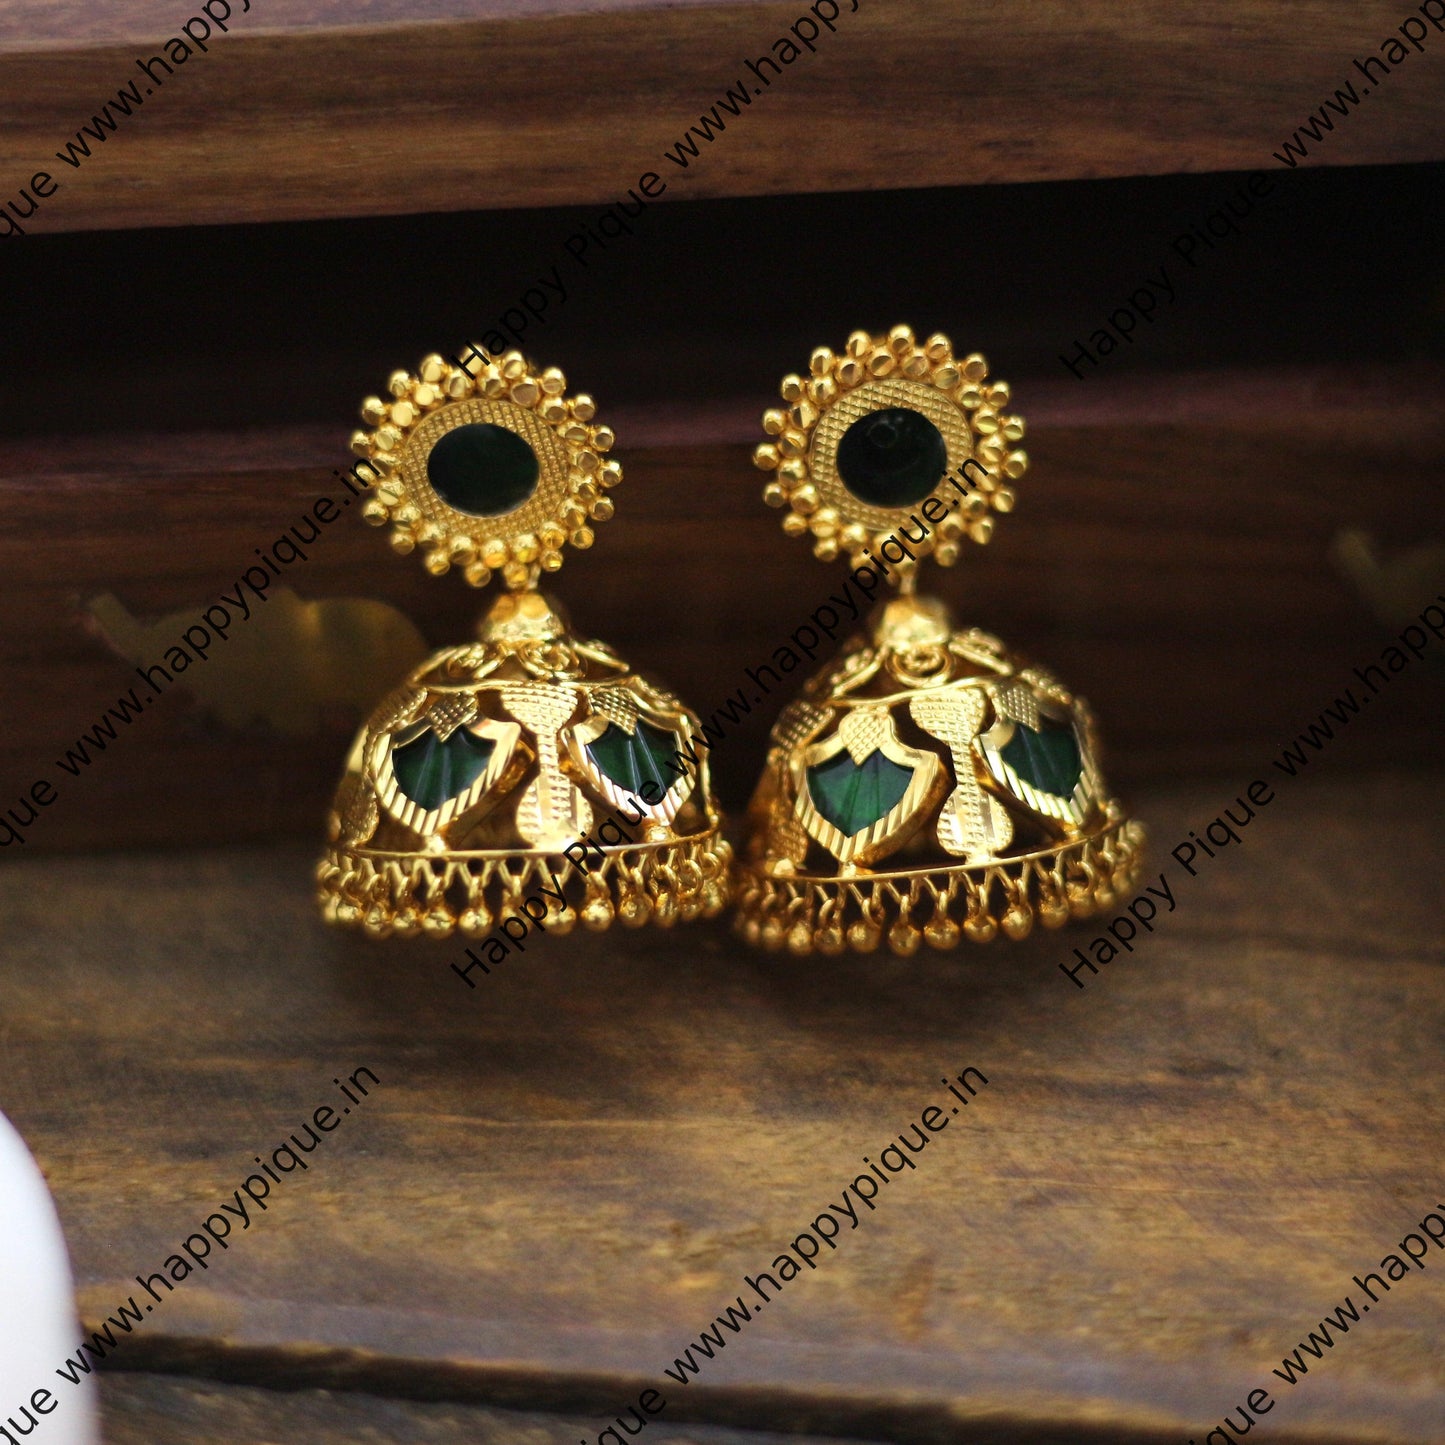 Real Gold Tone Traditional Kerala Palakka Jhumkas